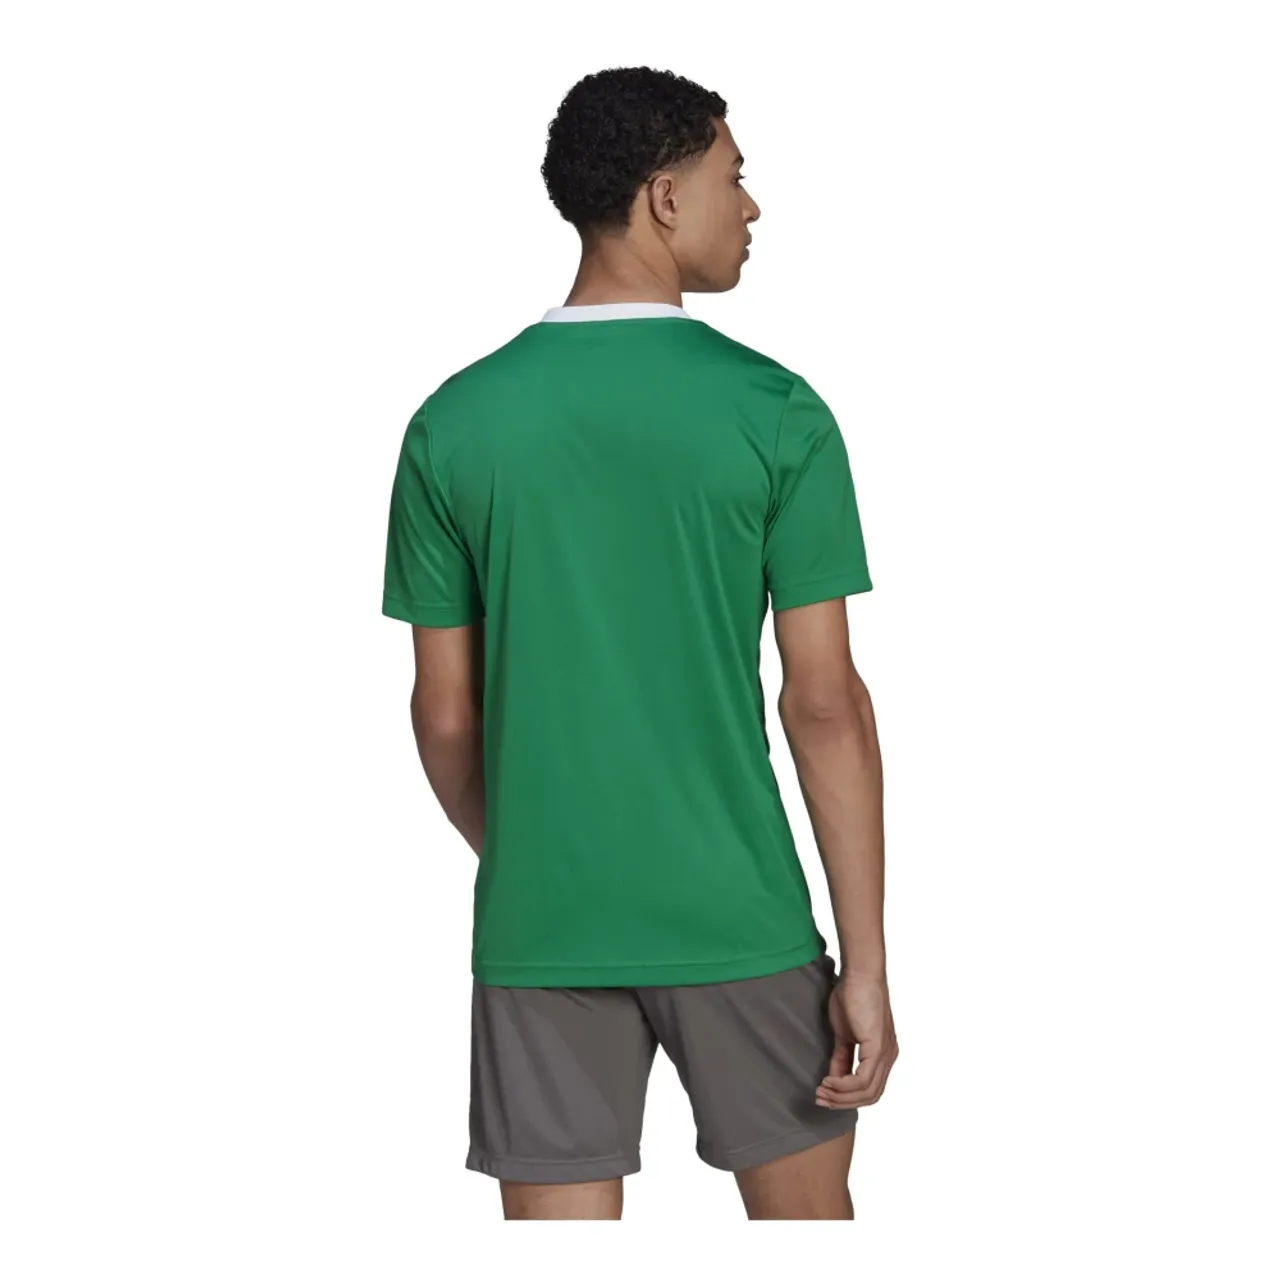 T-Shirt Ent22 Jsy Teagrn/W Adidas